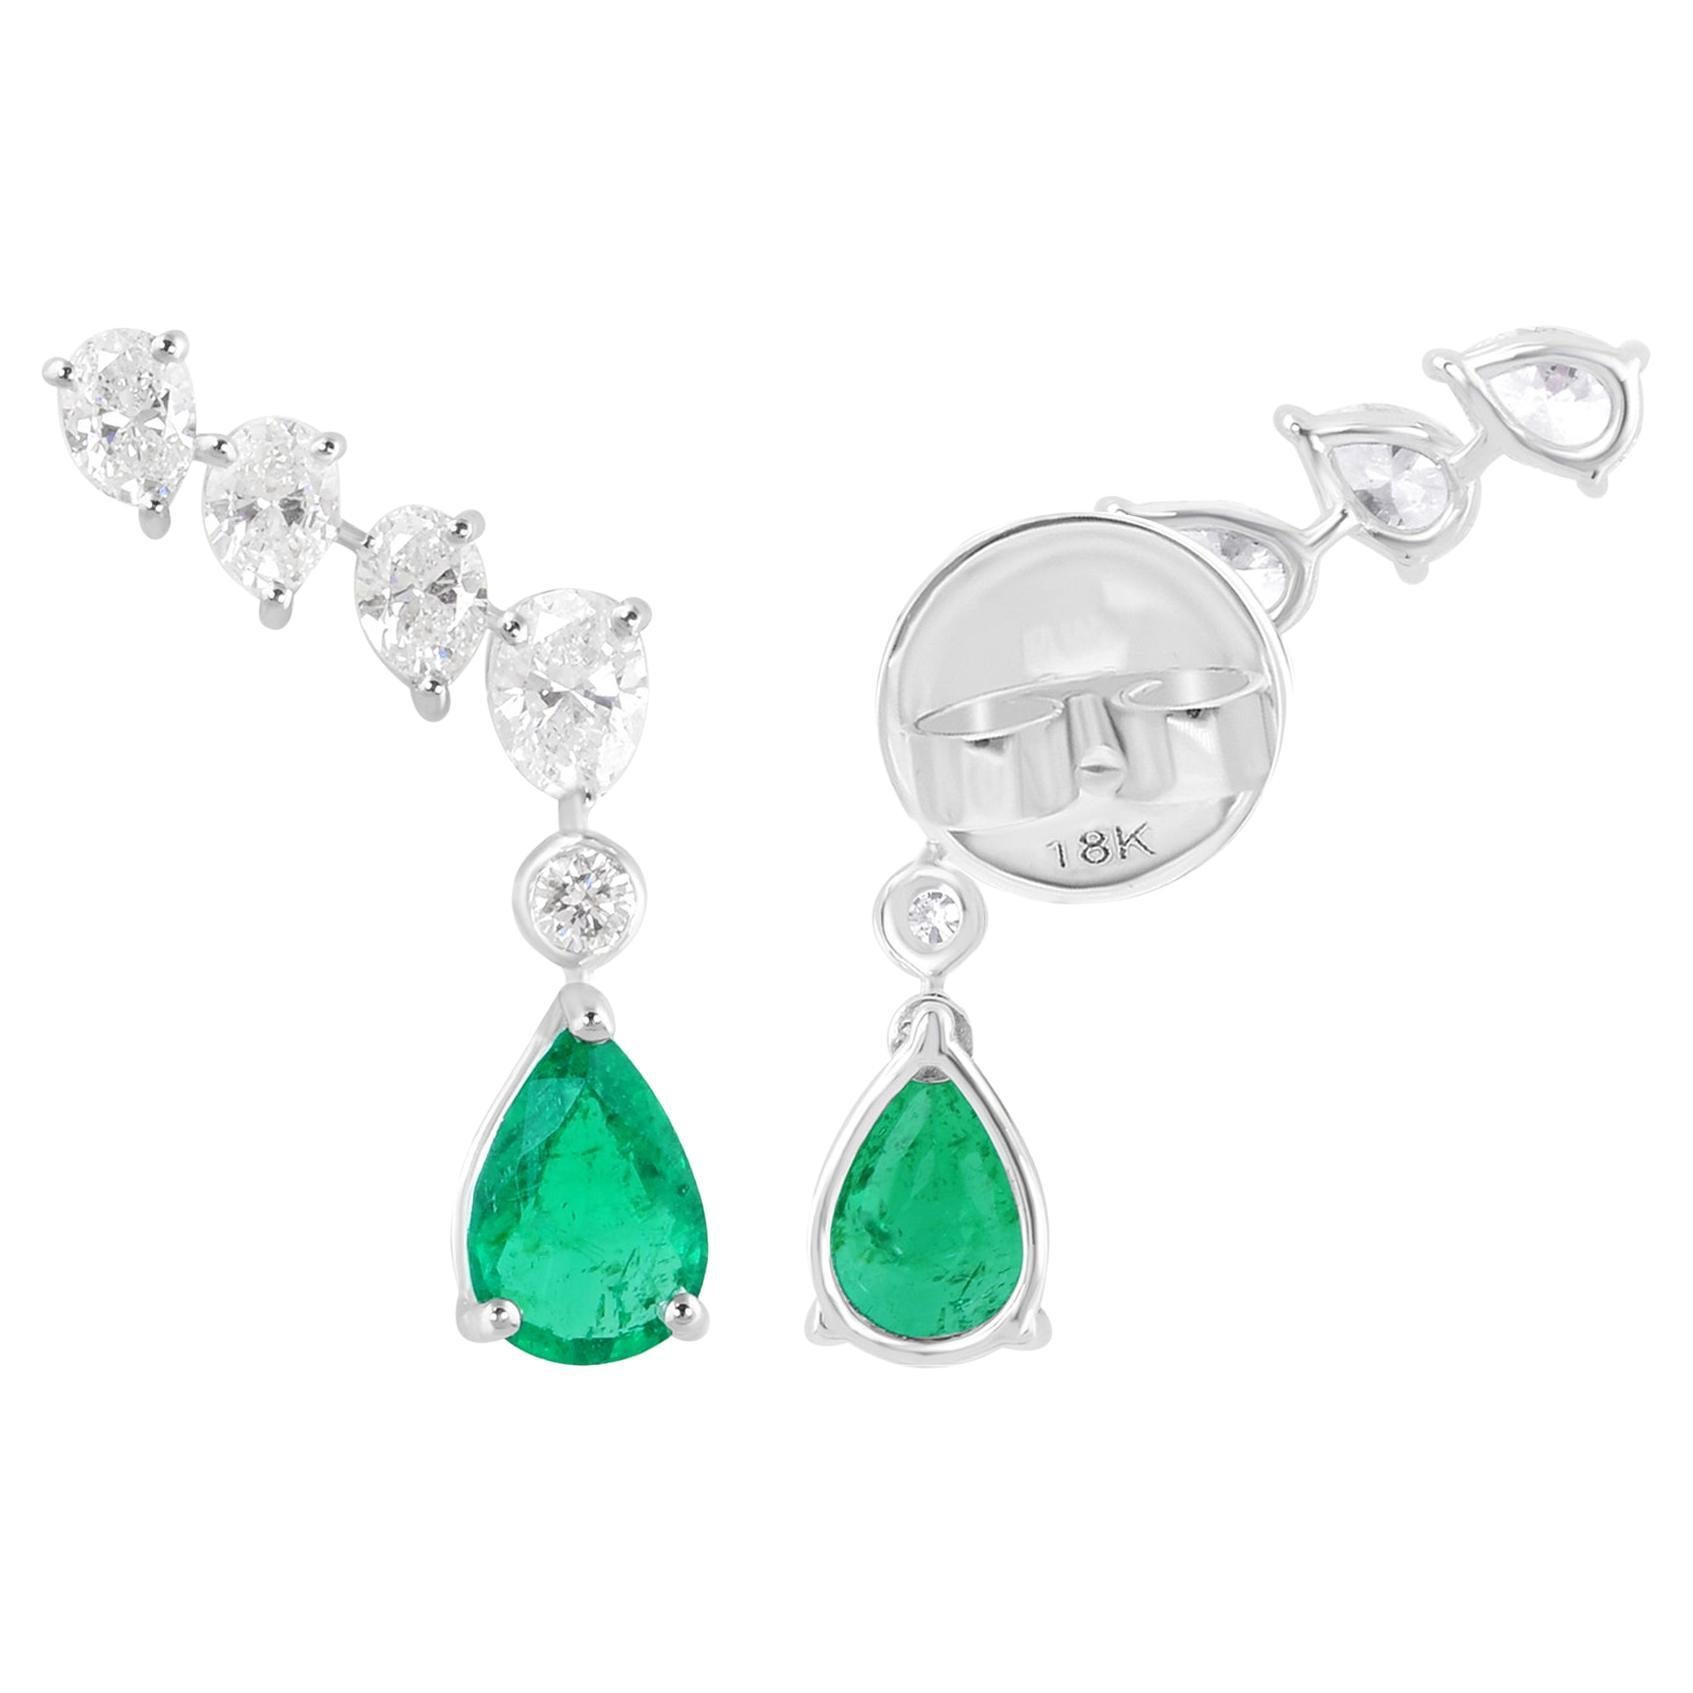 Zambian Emerald Ear Clamber Earrings Diamond 14 Karat White Gold Fine Jewelry For Sale